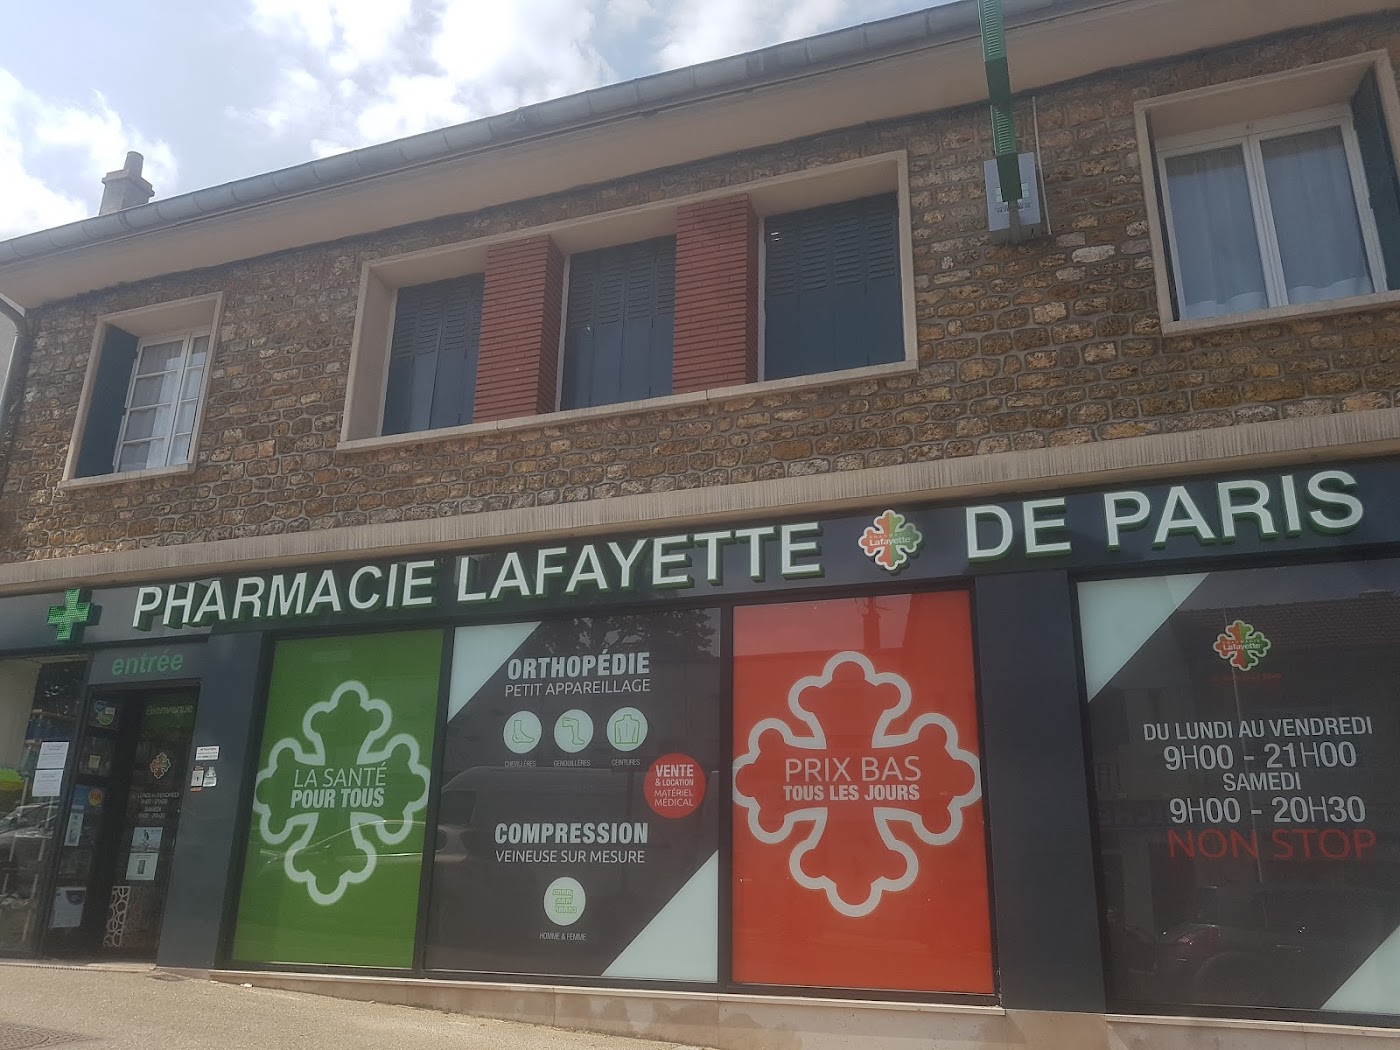 Pharmacie Lafayette de Paris